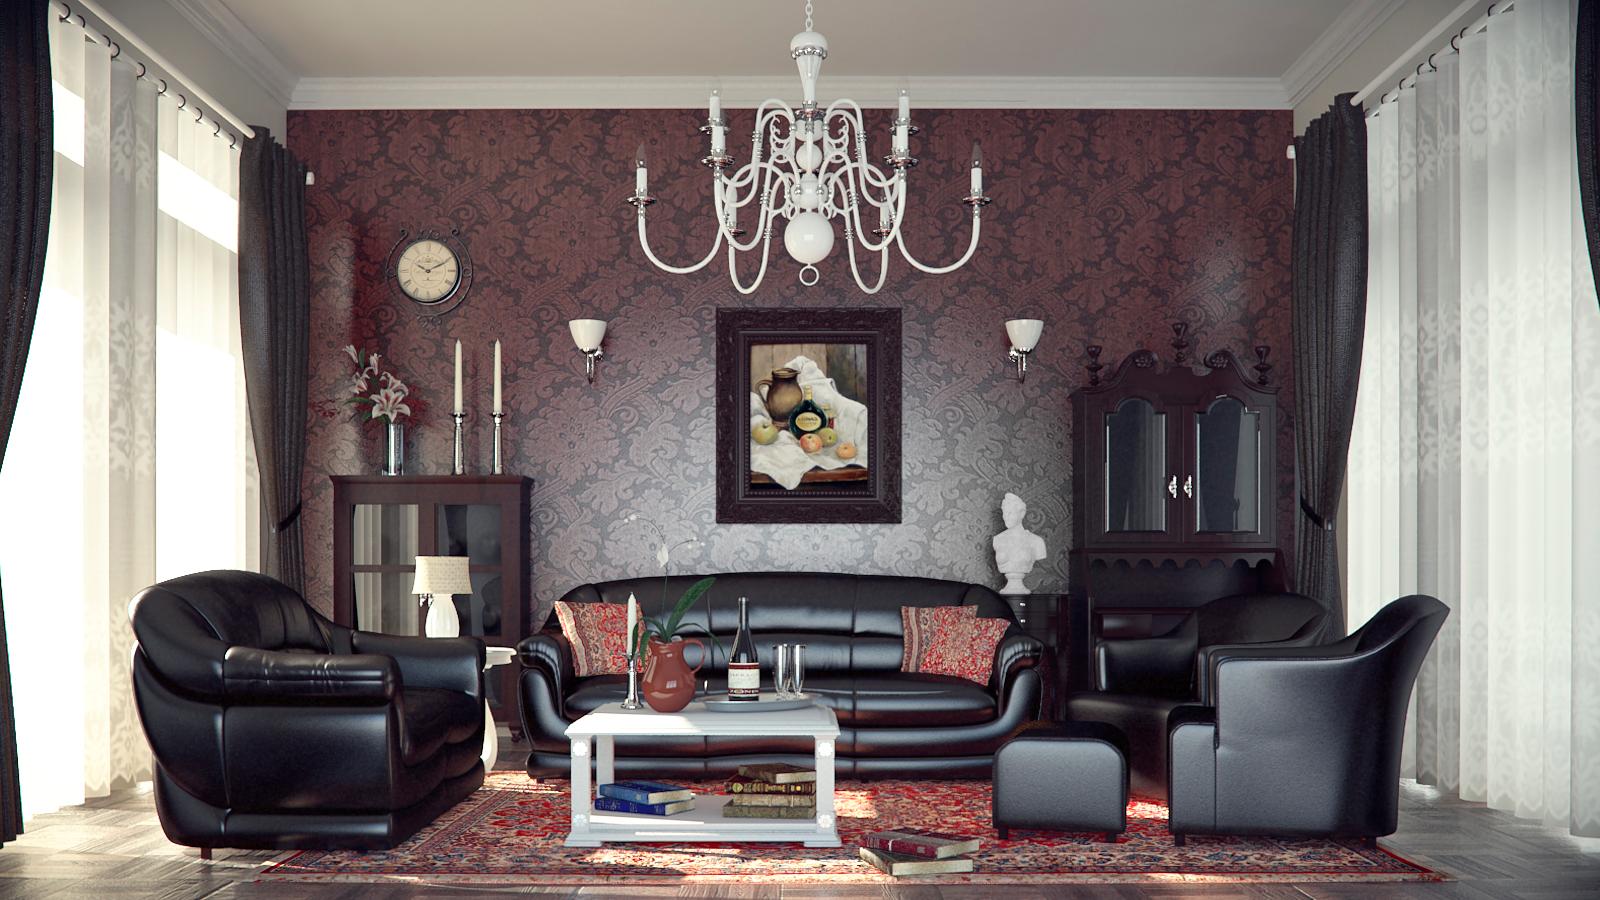 Wohnzimmer in rotem Charme mit stilvollem weißen Kronleuchter klassisch #wohnzimmer #ledersofa #kronleuchter ©kronleuchterhaus.de